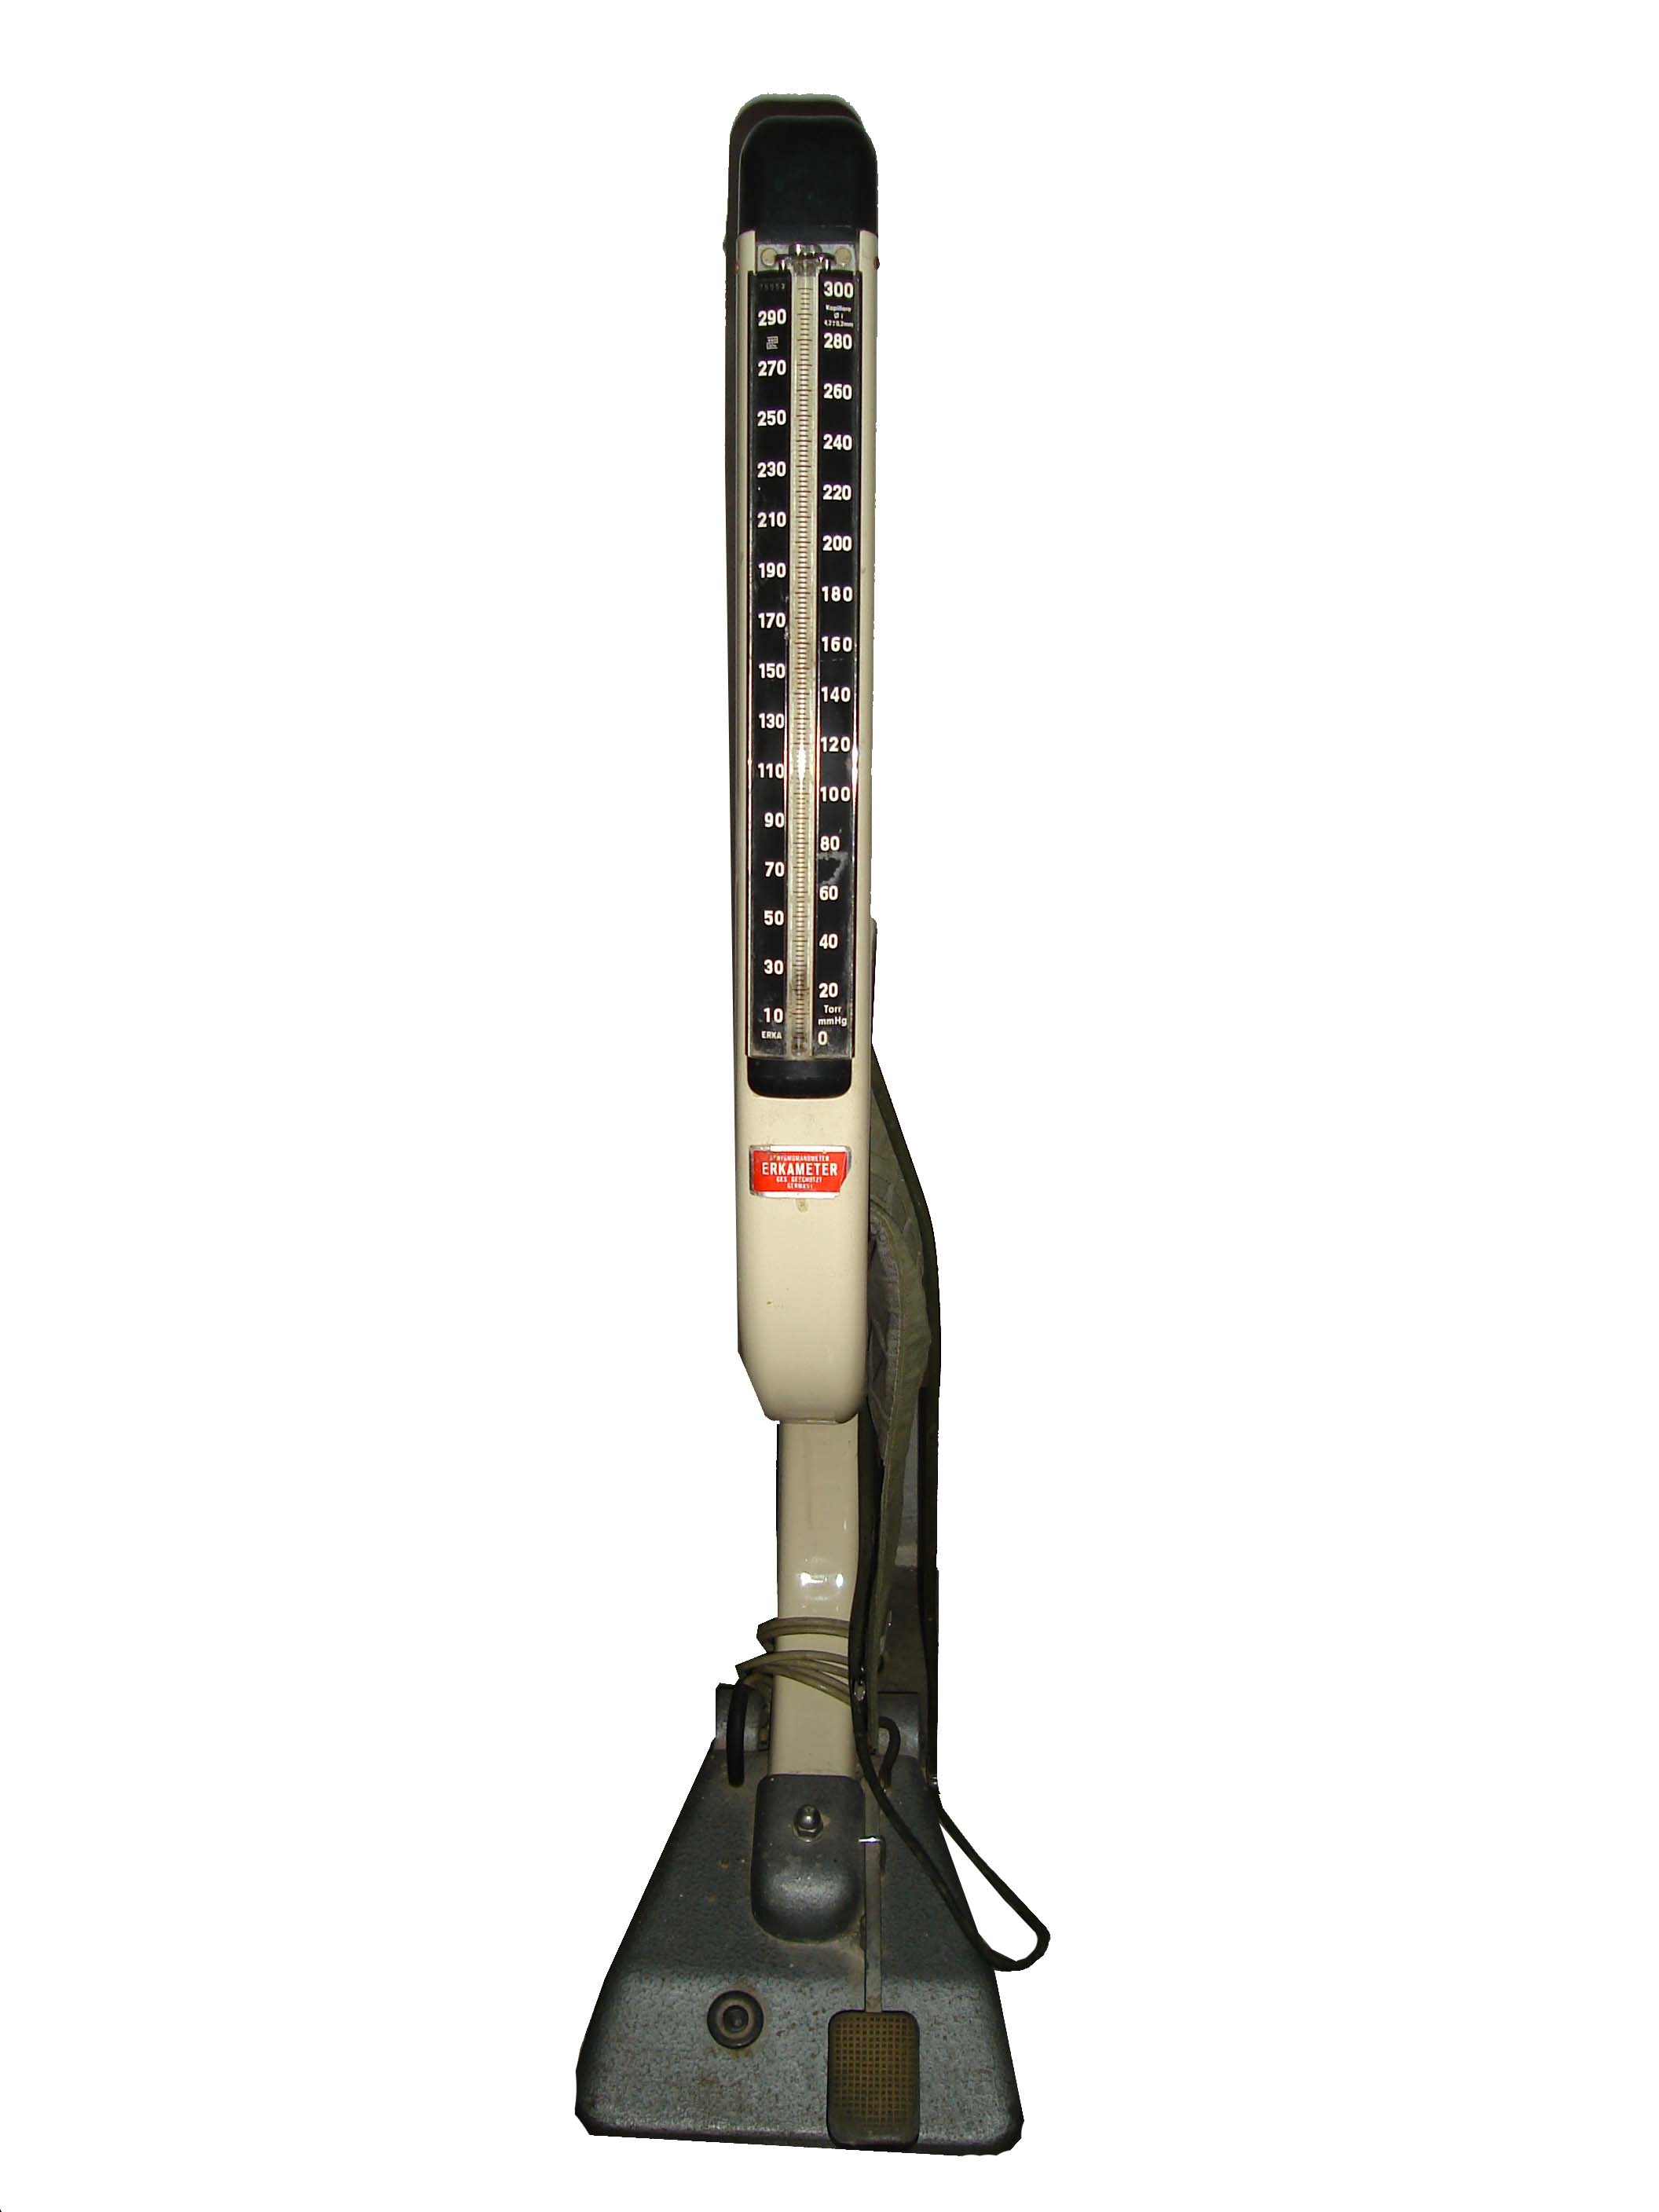 sfigmomanometro, a piede - Erkameter GmbH, Chemnitz, Deutschland (seconda metà XX secolo)